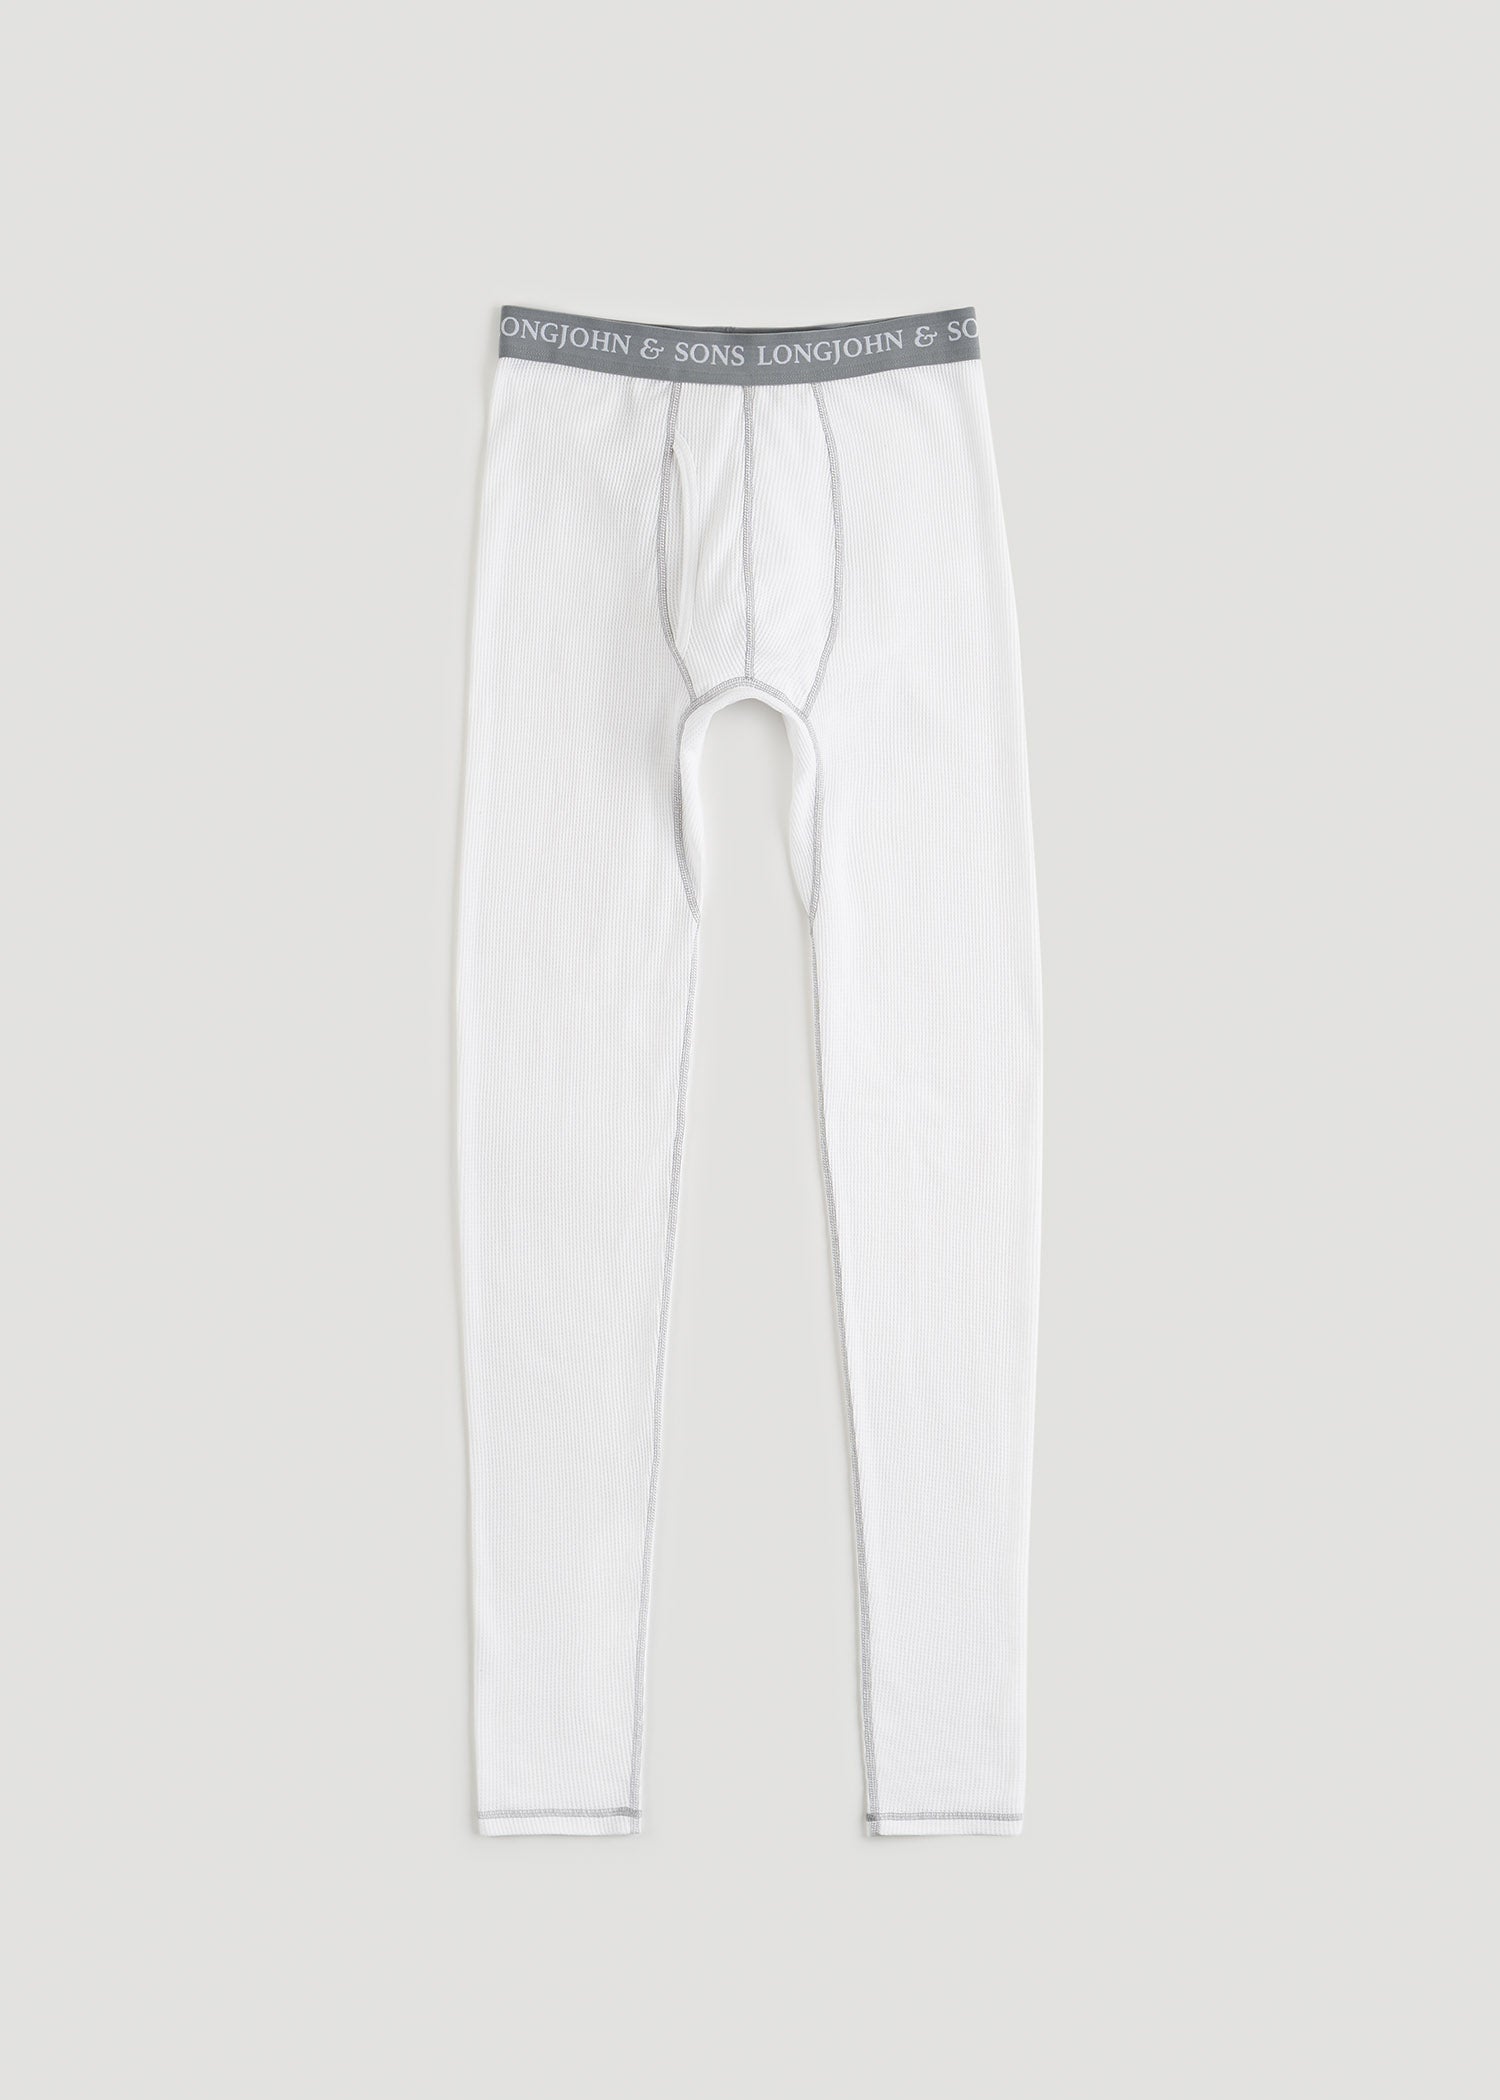 Natural Merino Wool Leggings Mens Underwear Long Johns Pajama Pjs